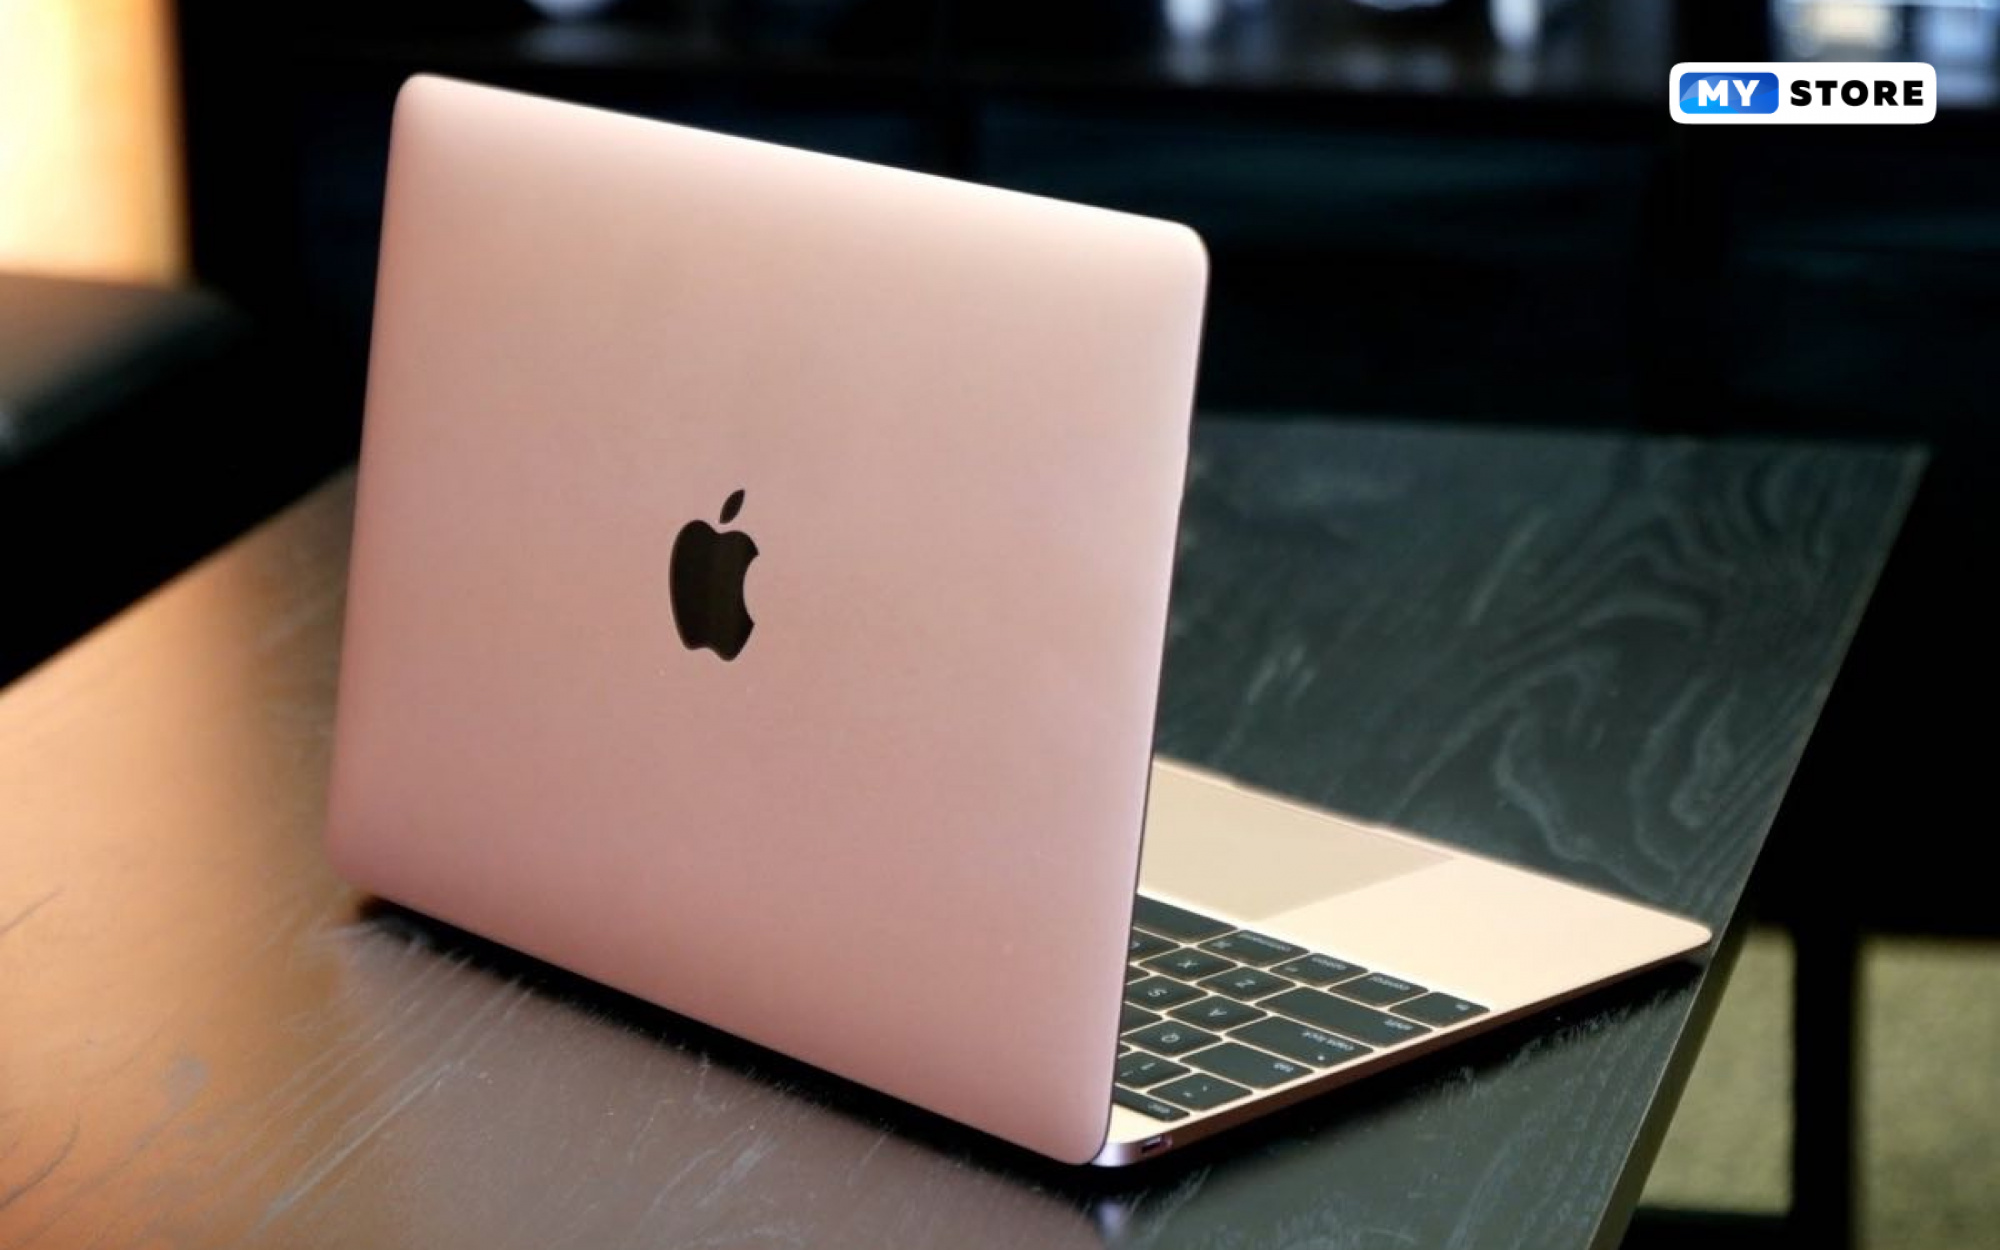  10 мифов про Mac, которые давно пора развеять